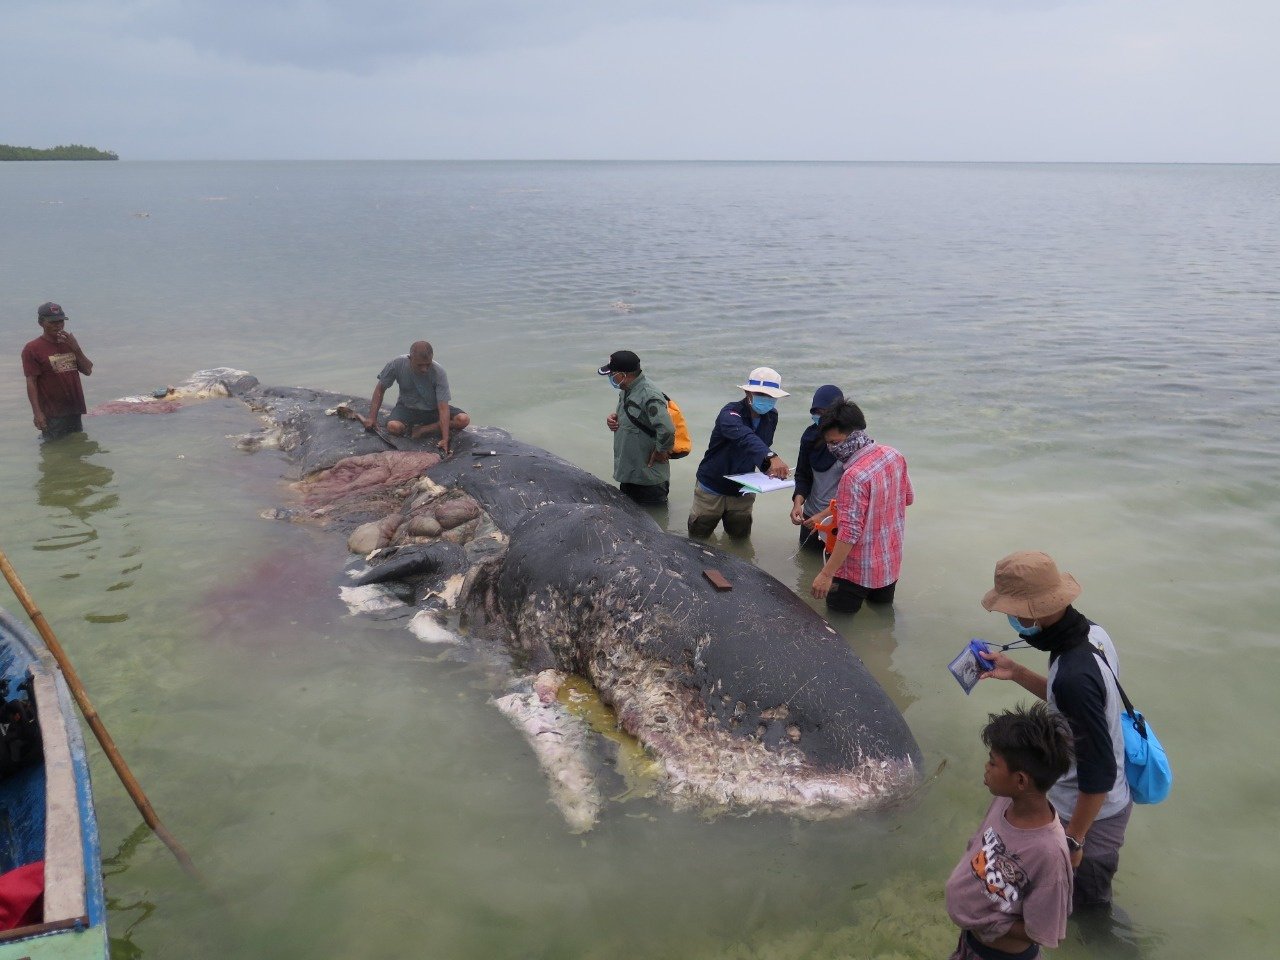 抹香鯨命喪印尼 胃裝6公斤塑膠垃圾